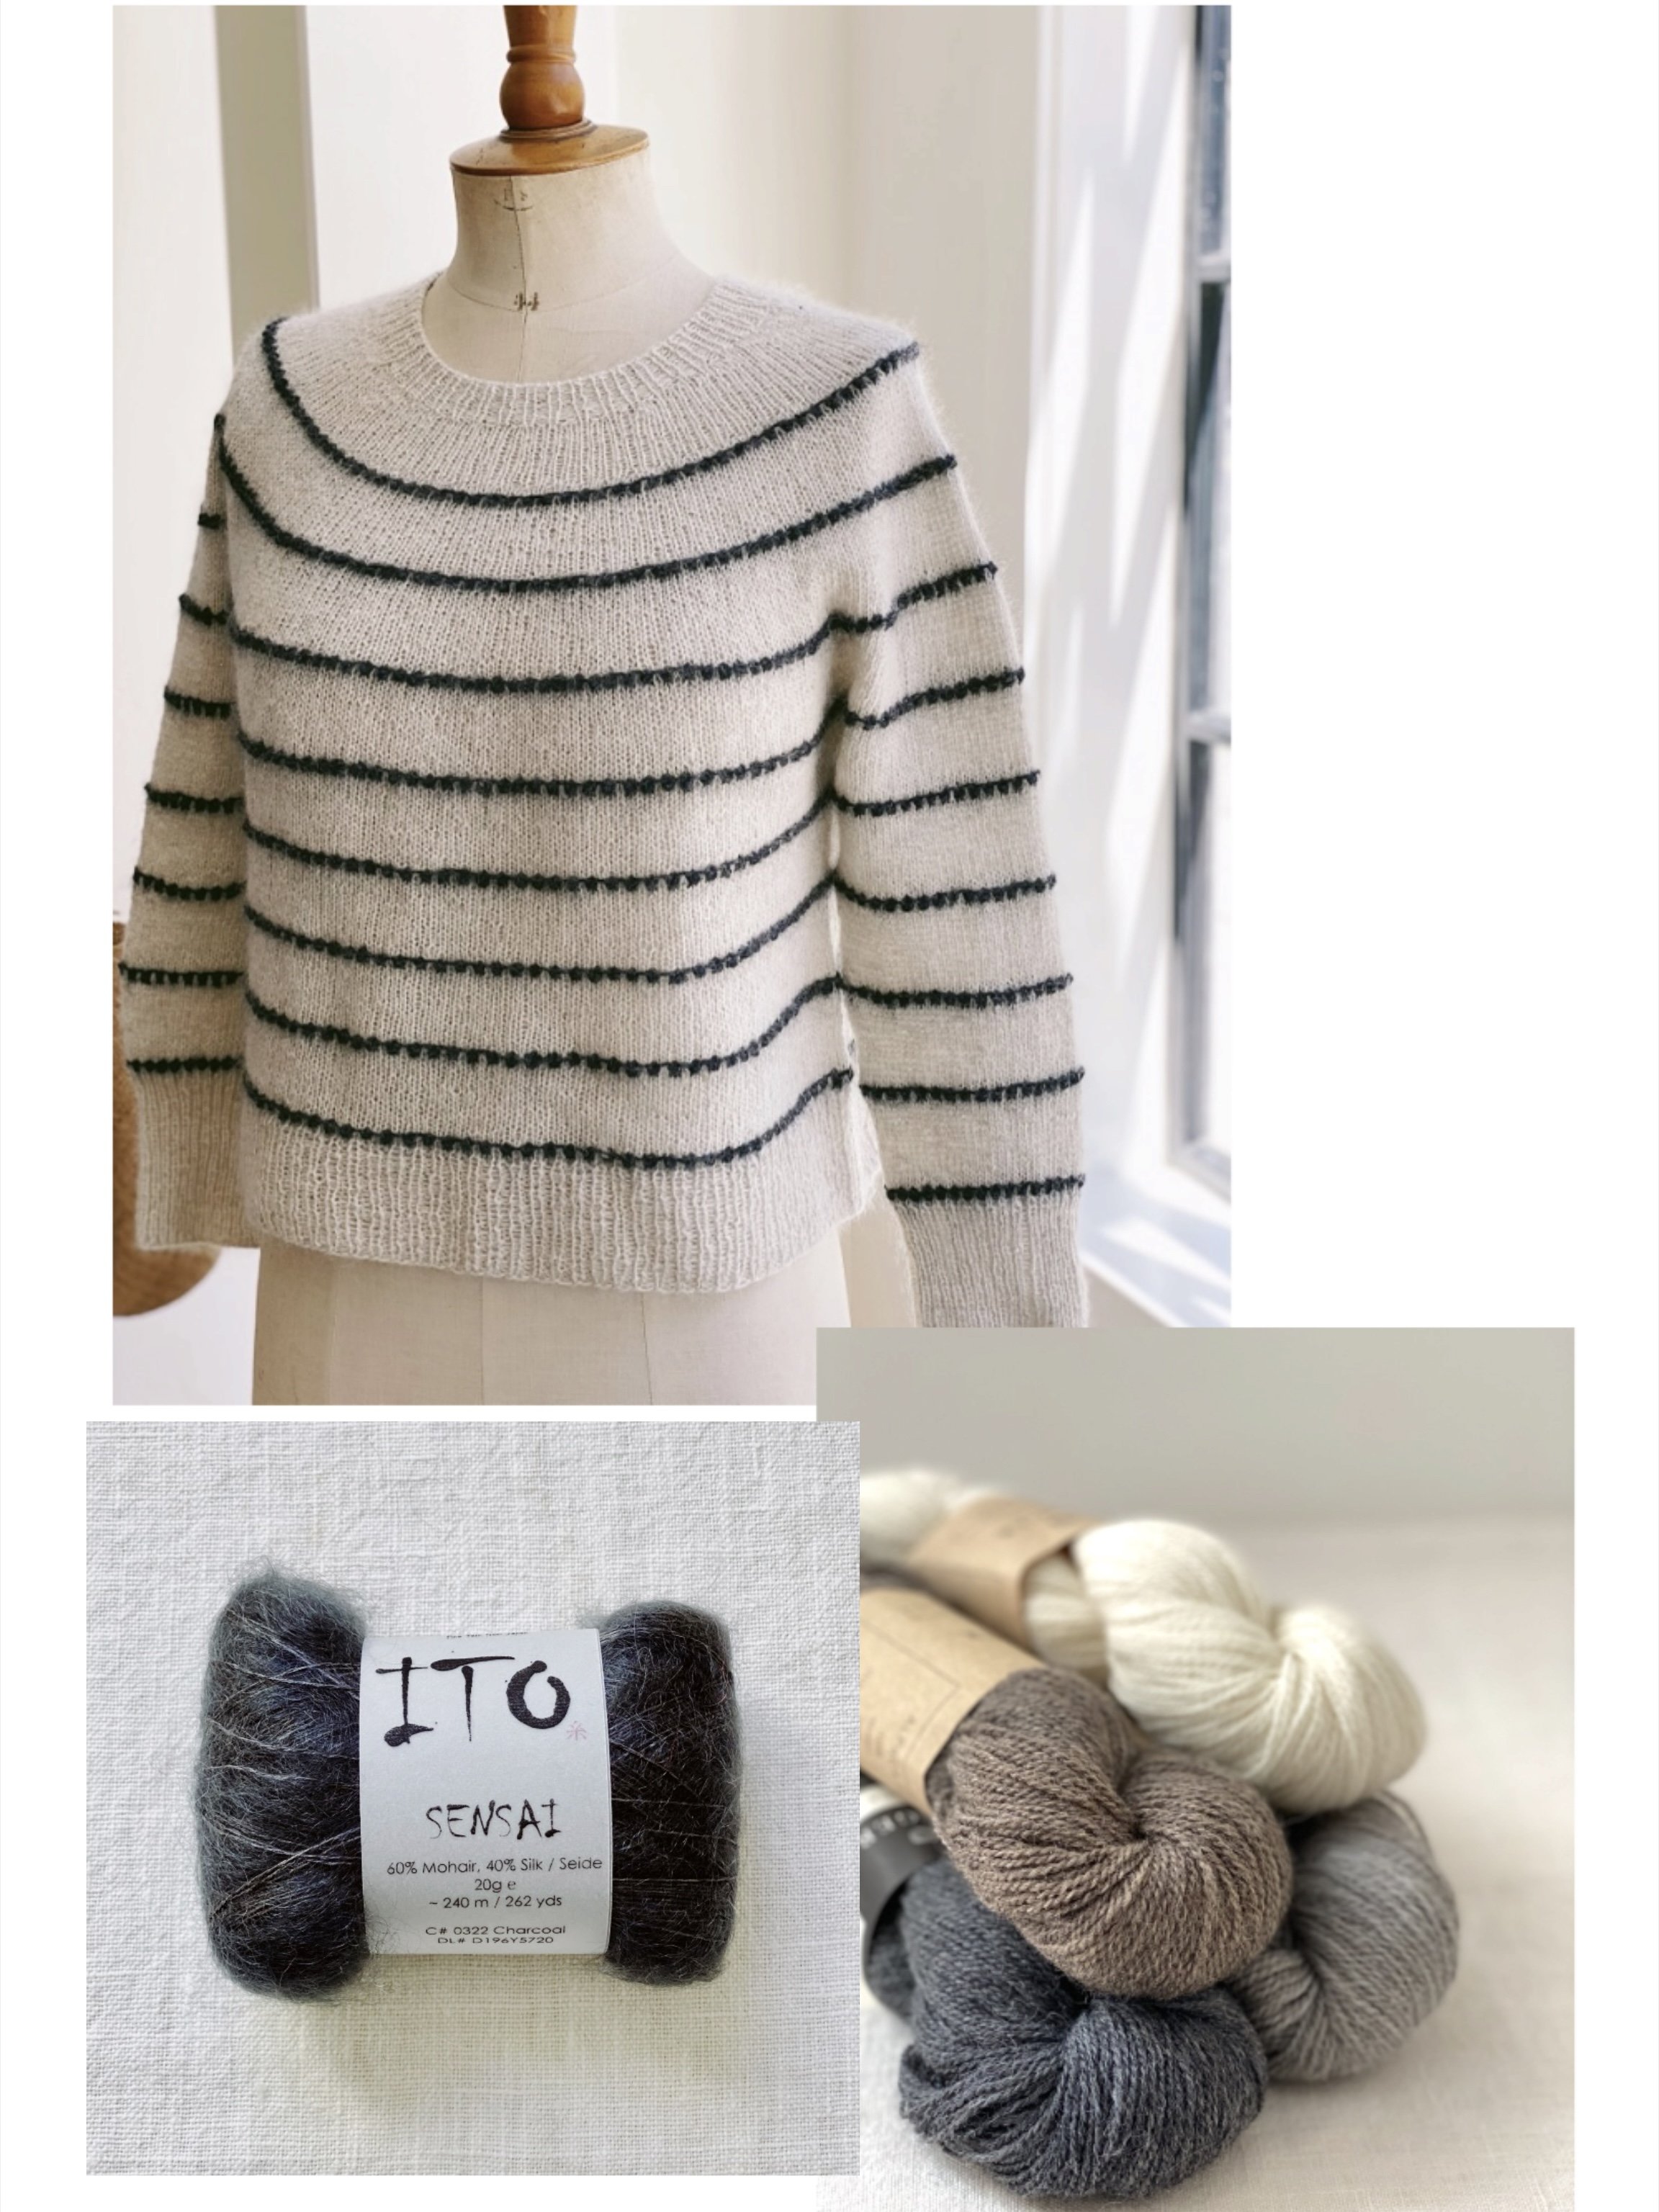 Halcyon Lace sweater pattern by Julia Piro